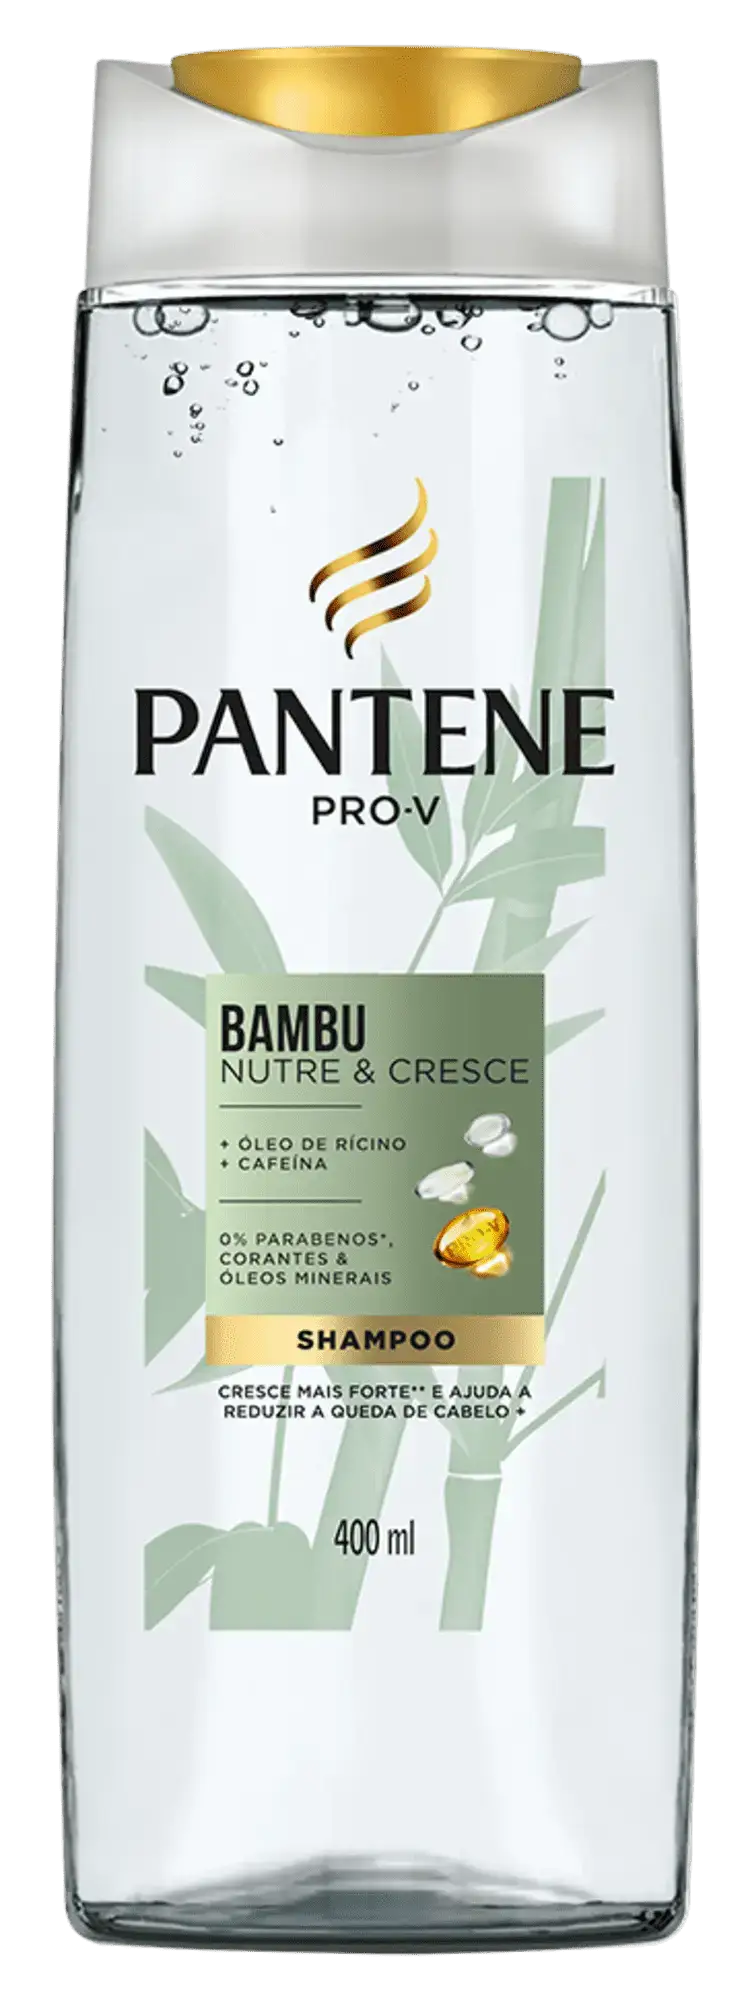 Shampoo Bambu Nutre e Cresce da Pantene com óleo de rícino e cafeína para queda de cabelo e fortalecimento